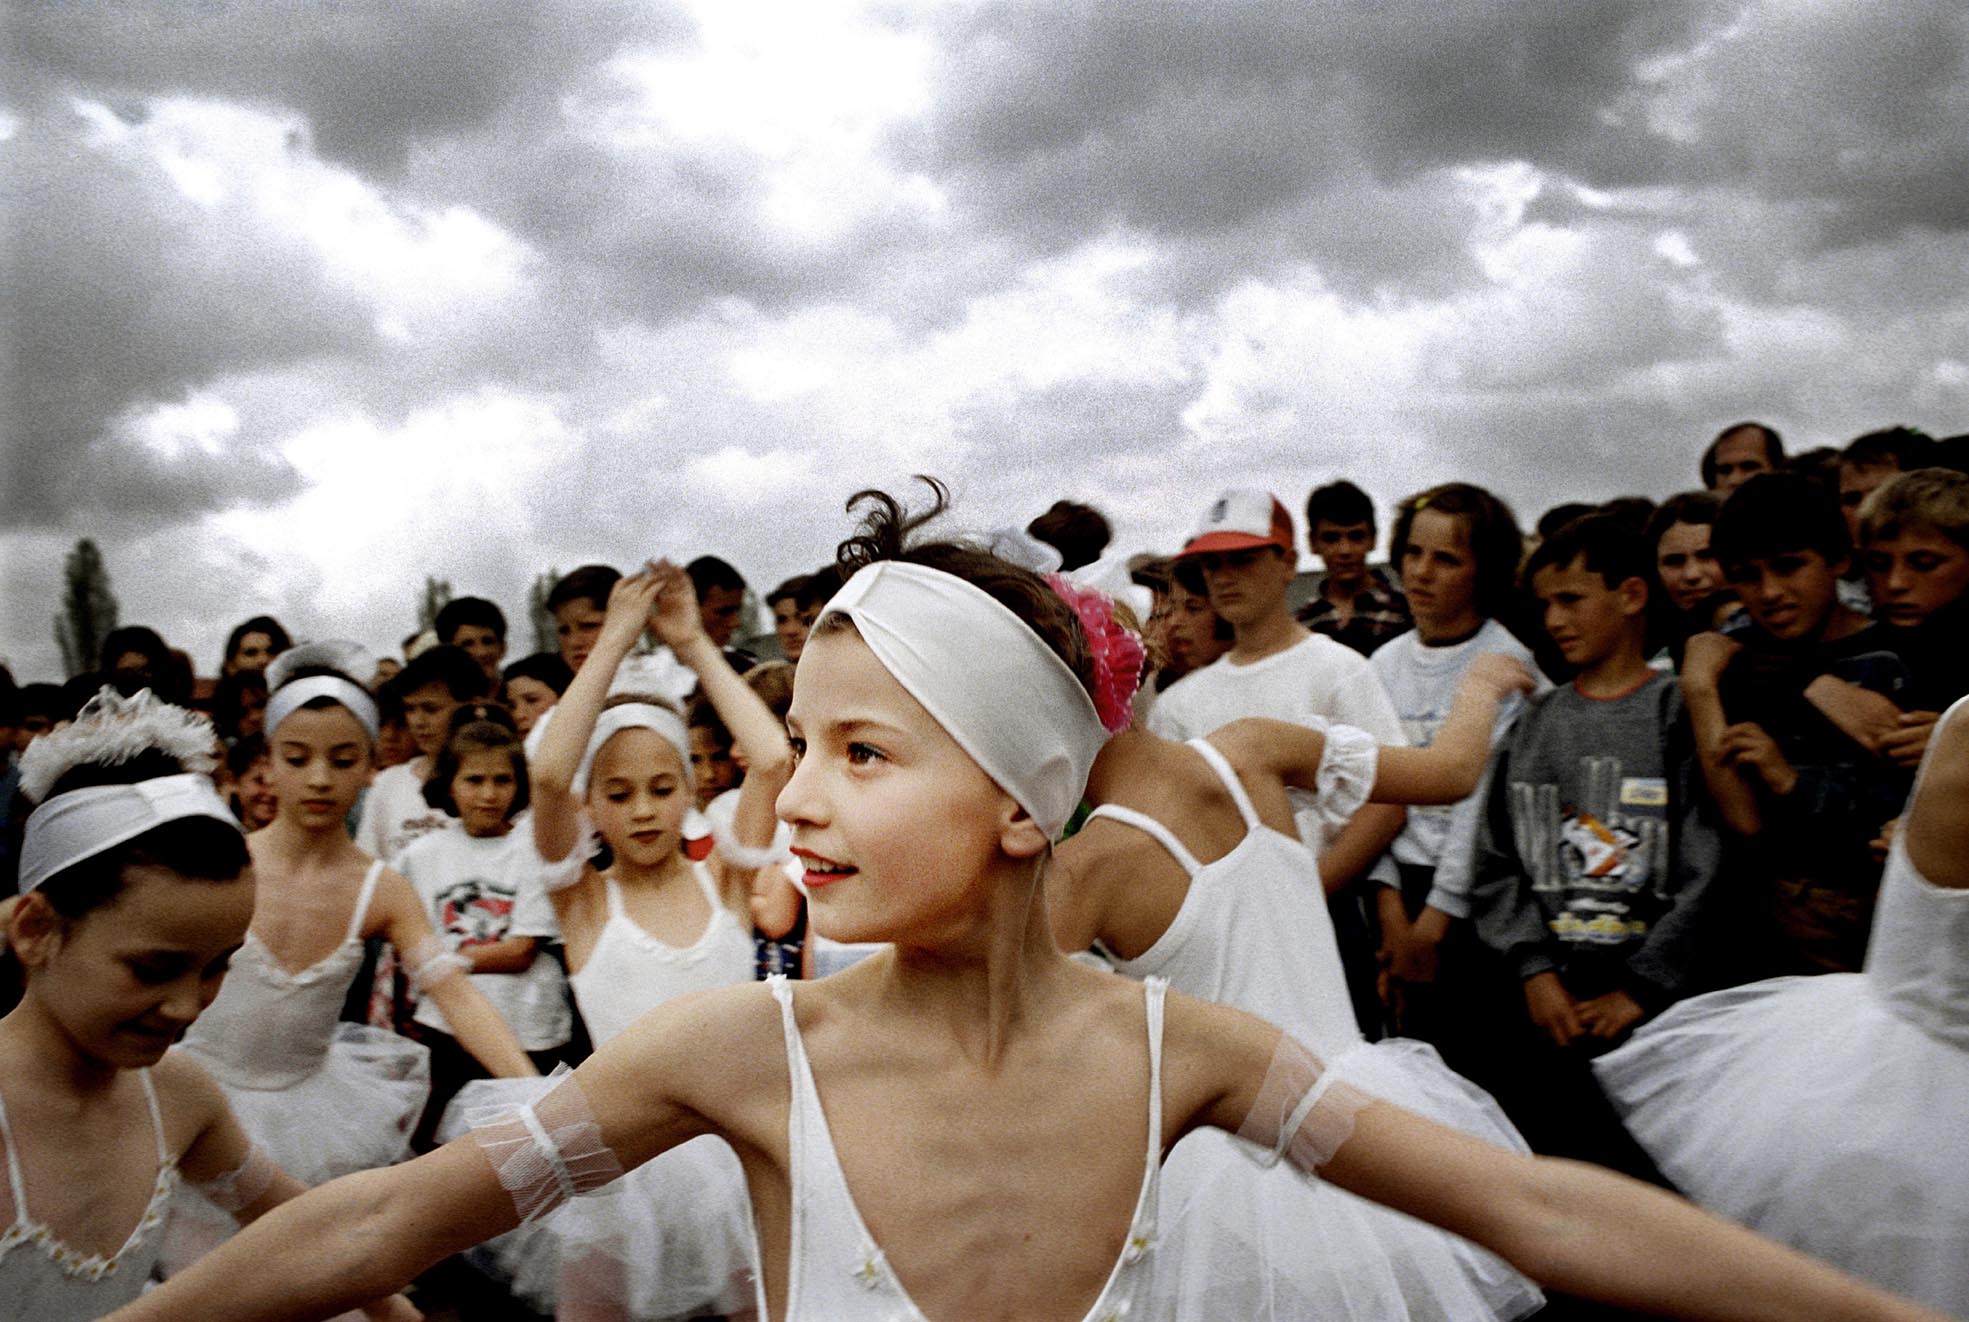 Elever från balettskolan i Tirana uppträder för flyktingar från Kosovo - Årets bild 1999 av Johan Berglund